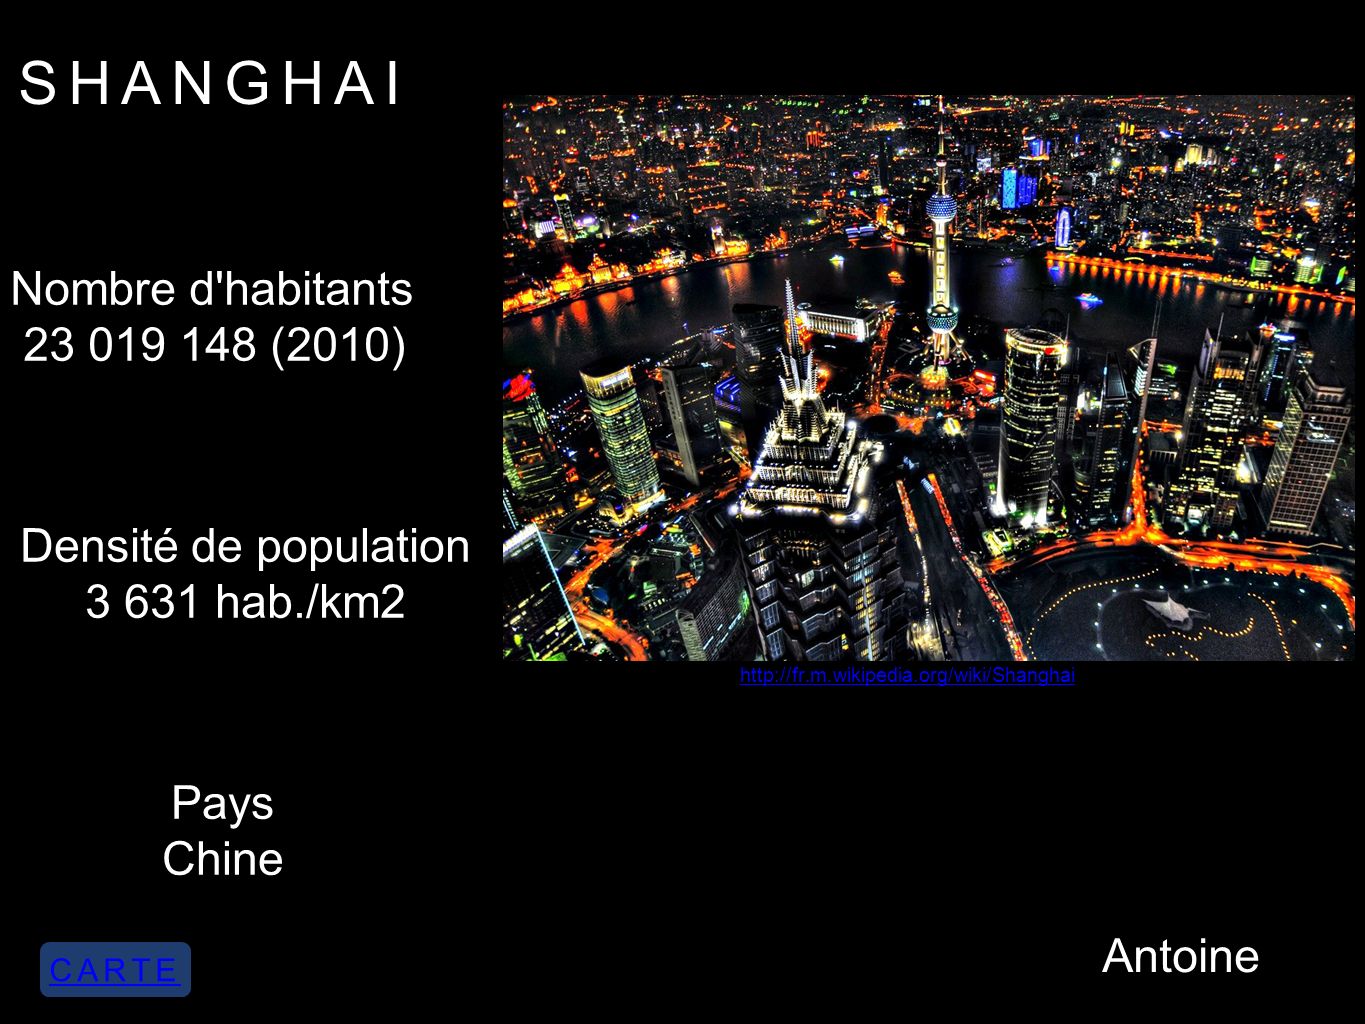 SHANGHAI Nombre d habitants (2010) Densité de population hab./km2 Pays Chine   Antoine CARTE